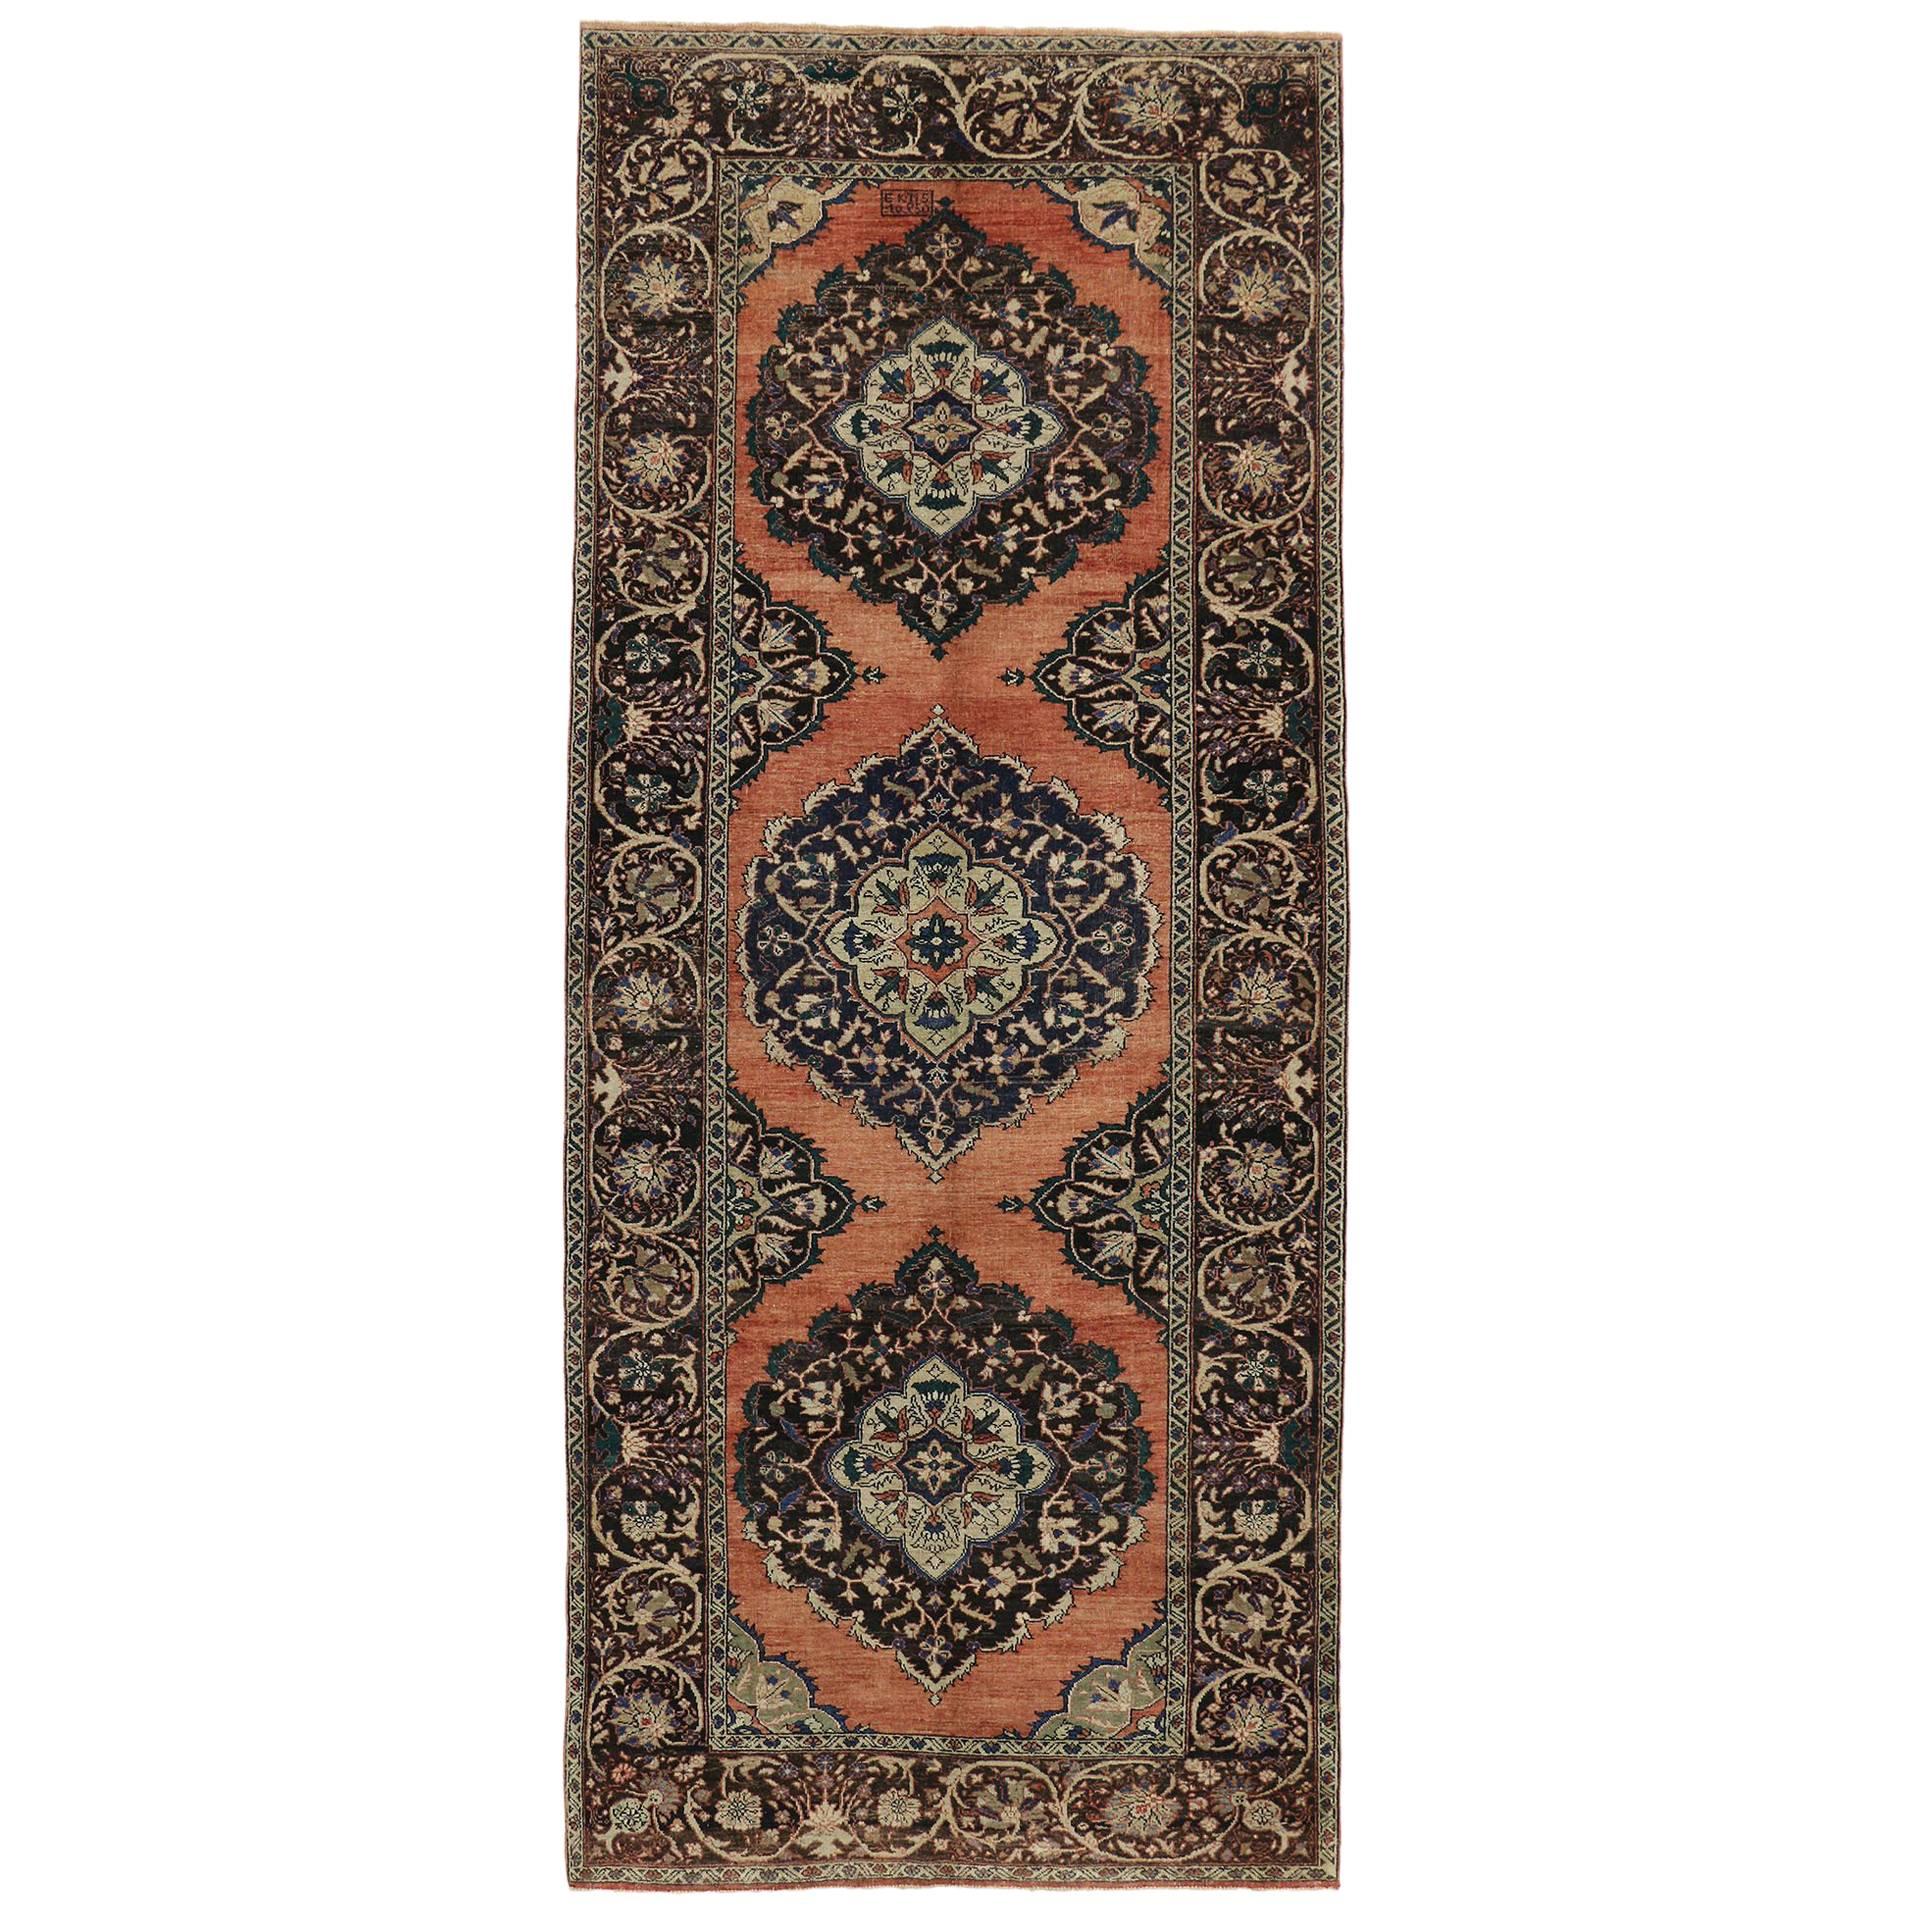 Türkischer Oushak-Galerie-Teppich im jakobinischen Stil, breiter Flursteppich